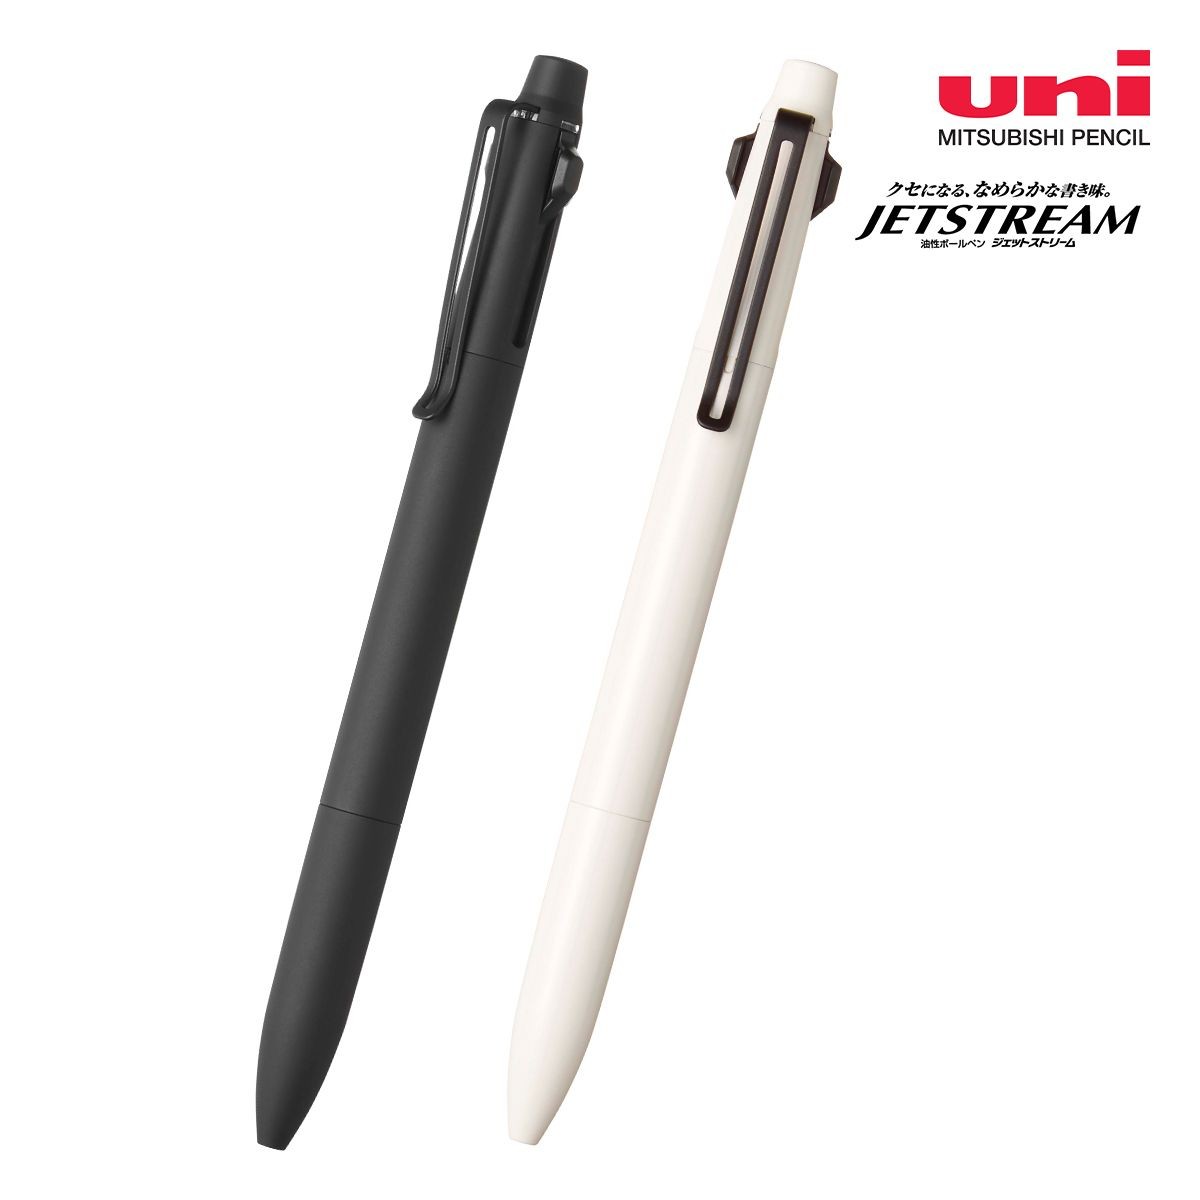 三菱鉛筆 ジェットストリーム プライム 3色ボールペン 0.5mm【名入れボールペン / パッド印刷】 画像1